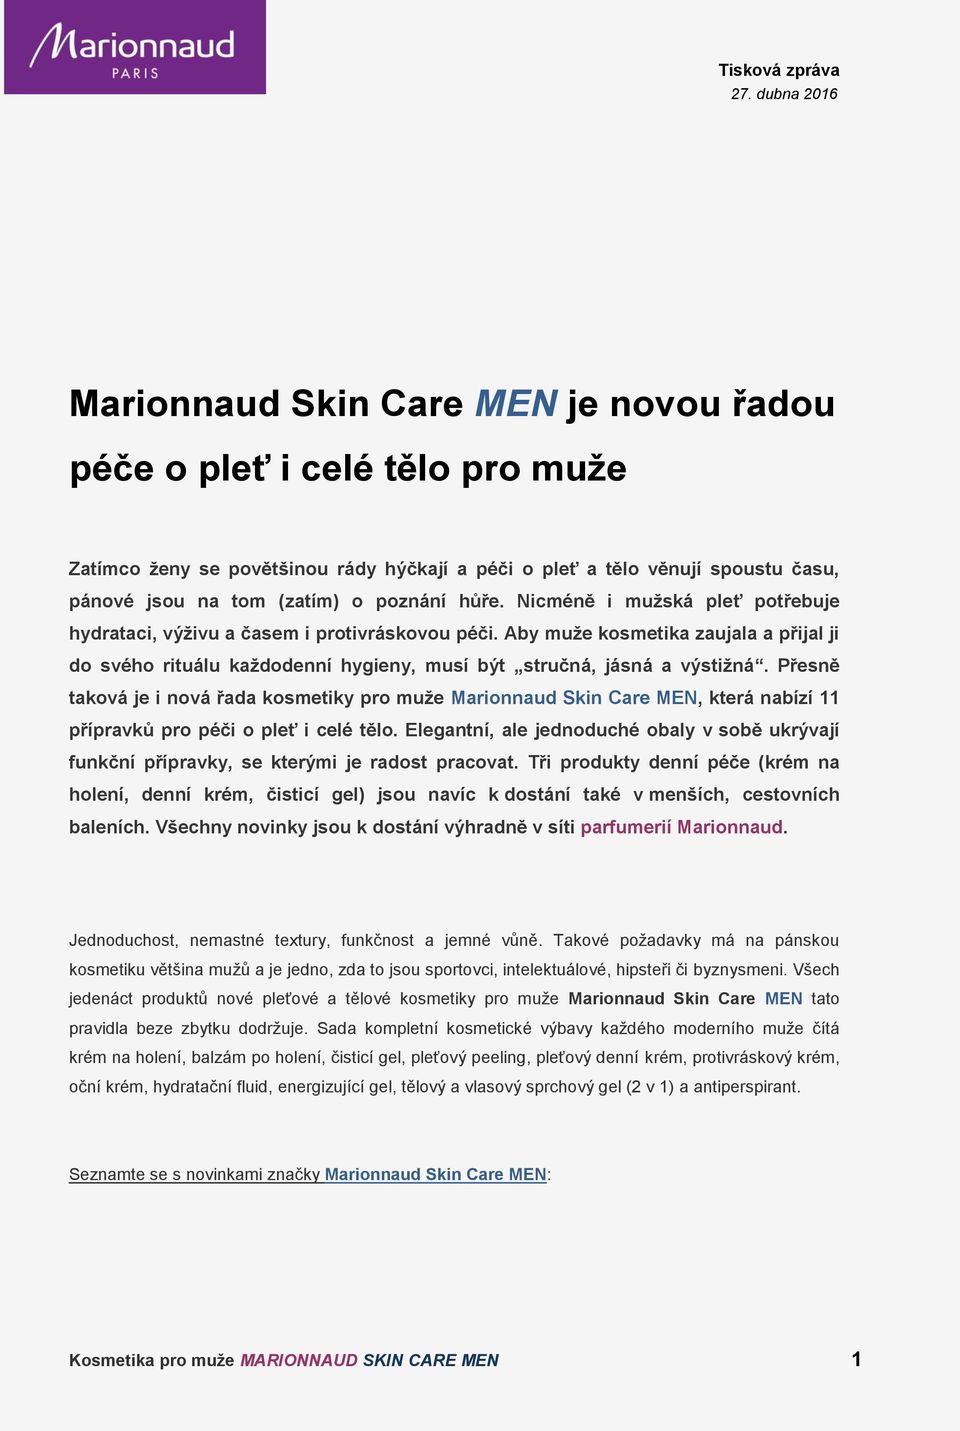 Přesně taková je i nová řada kosmetiky pro muže Marionnaud Skin Care MEN, která nabízí 11 přípravků pro péči o pleť i celé tělo.